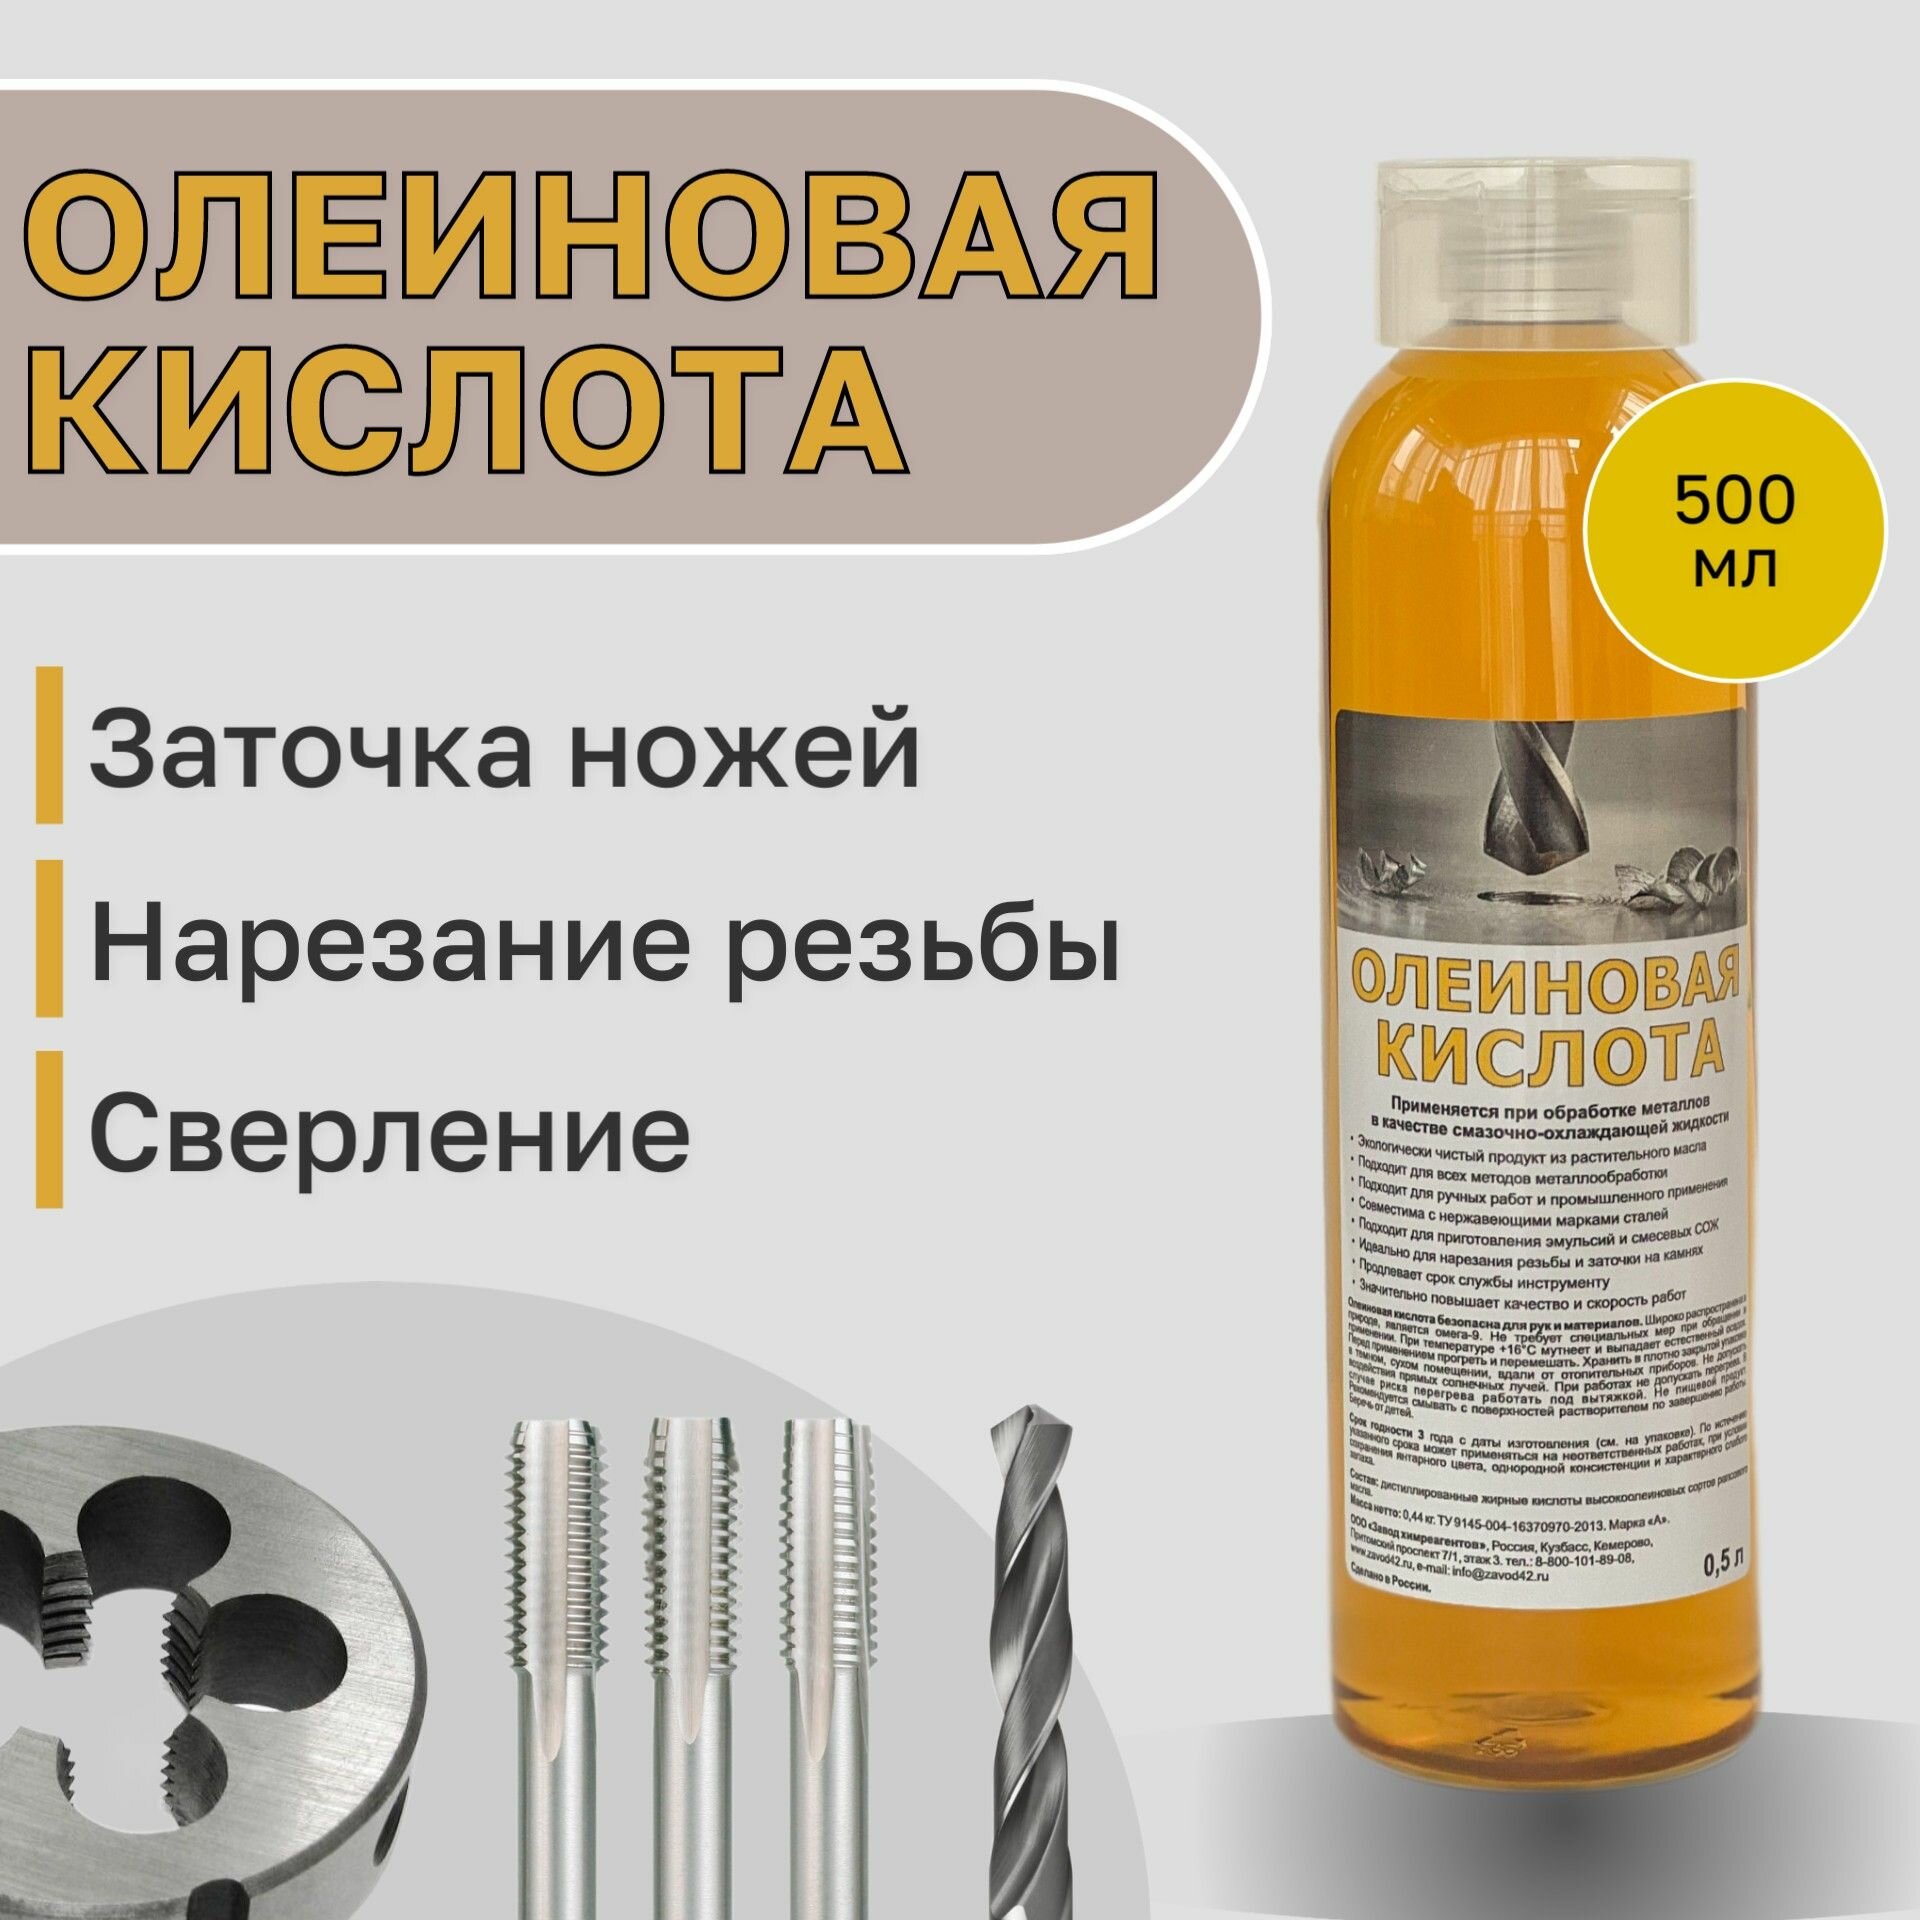 Олеиновая кислота во флаконе с удобным дозатором (СОЖ масло для заточки)